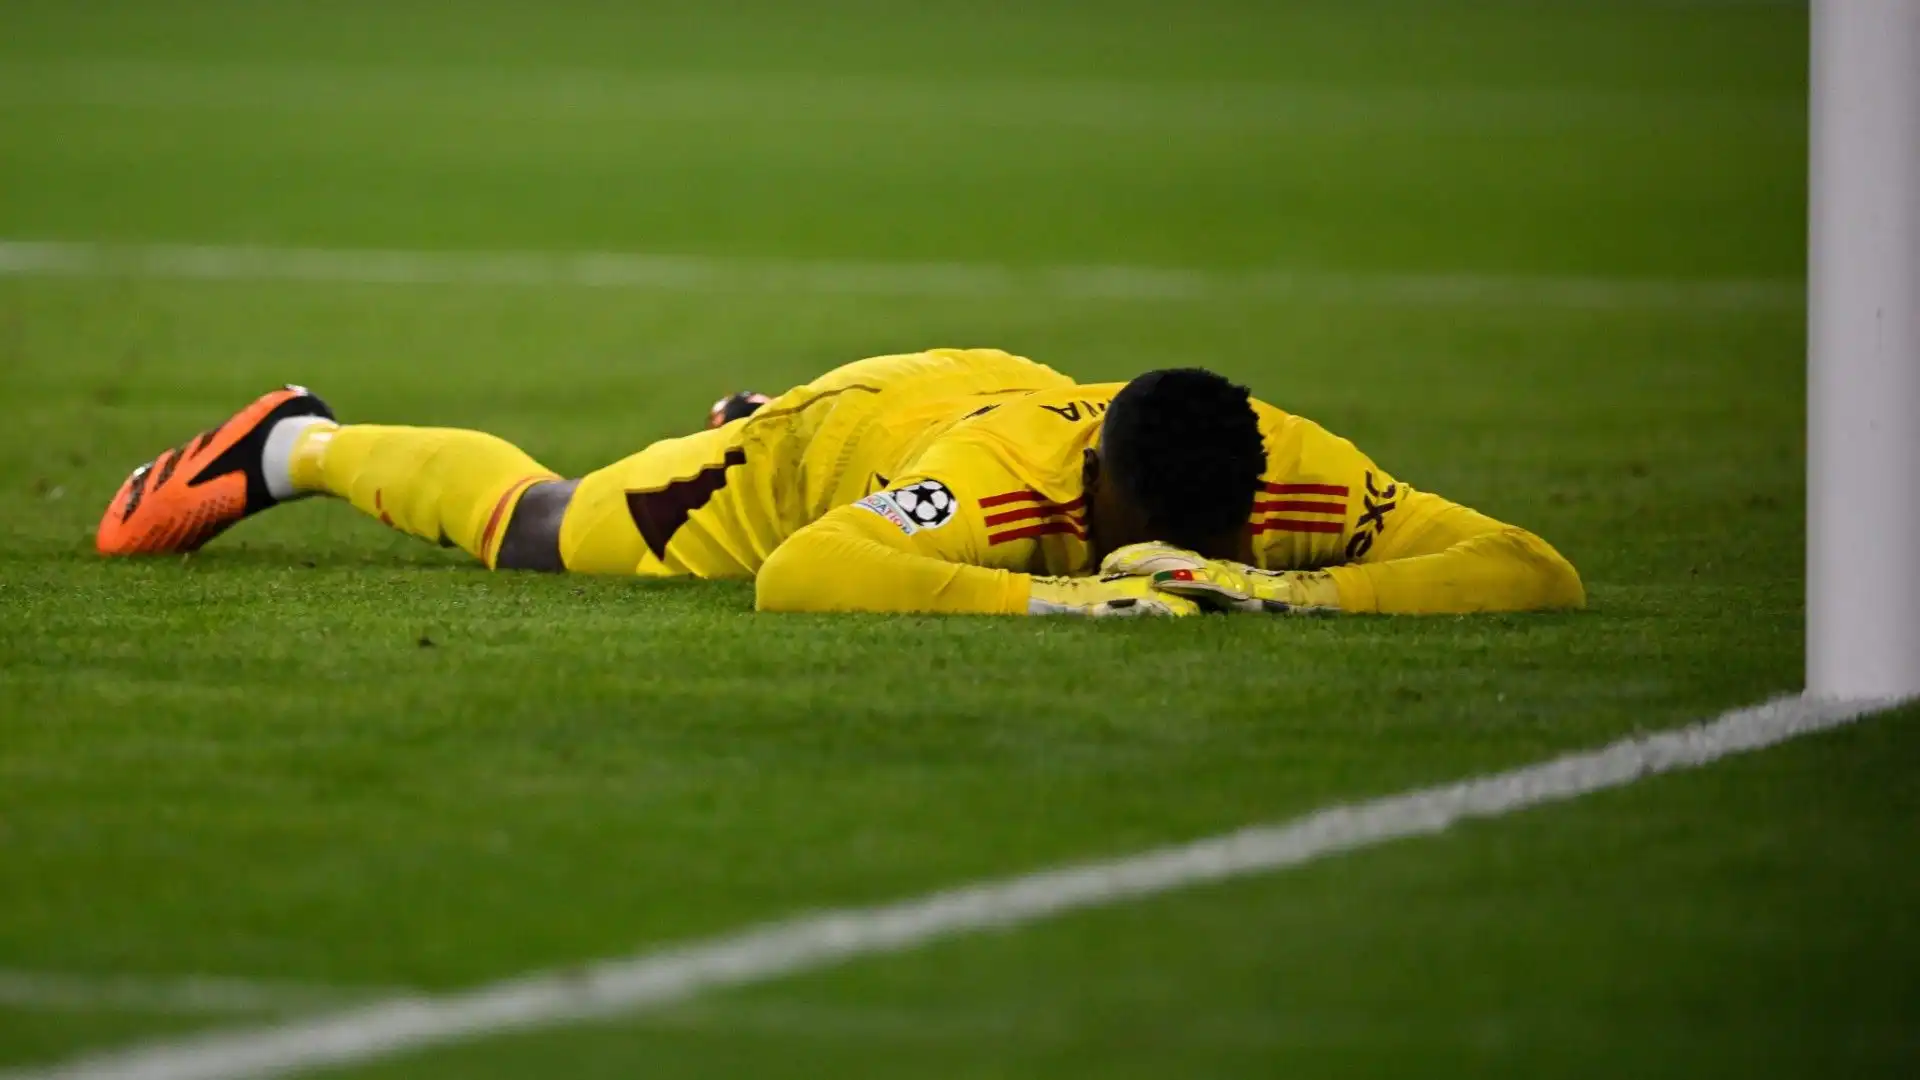 Anche nell'ultima partita di Champions League contro il Bayern Monaco non ha brillato: sul gol di Sané poteva fare meglio